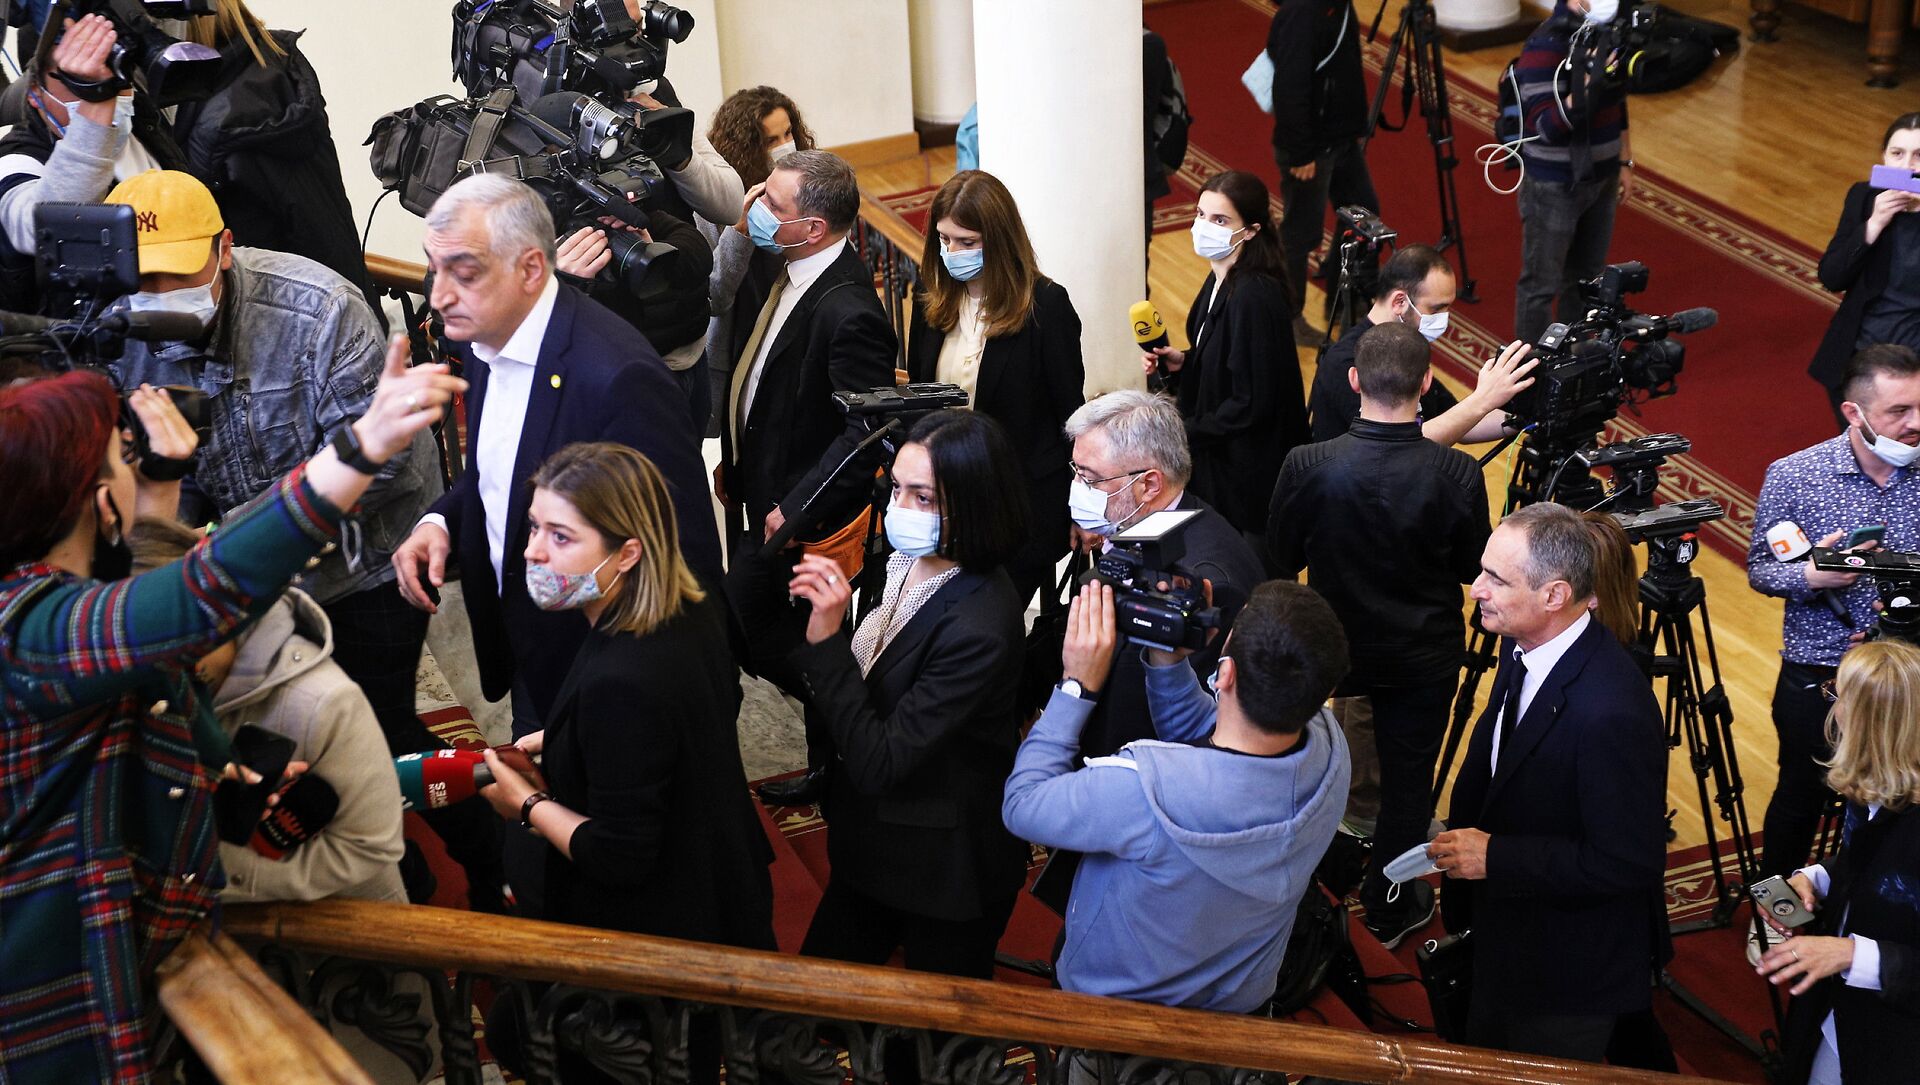 Депутаты от оппозиции идут на заседание парламента Грузии 27 апреля 2021 года - Sputnik Грузия, 1920, 27.04.2021